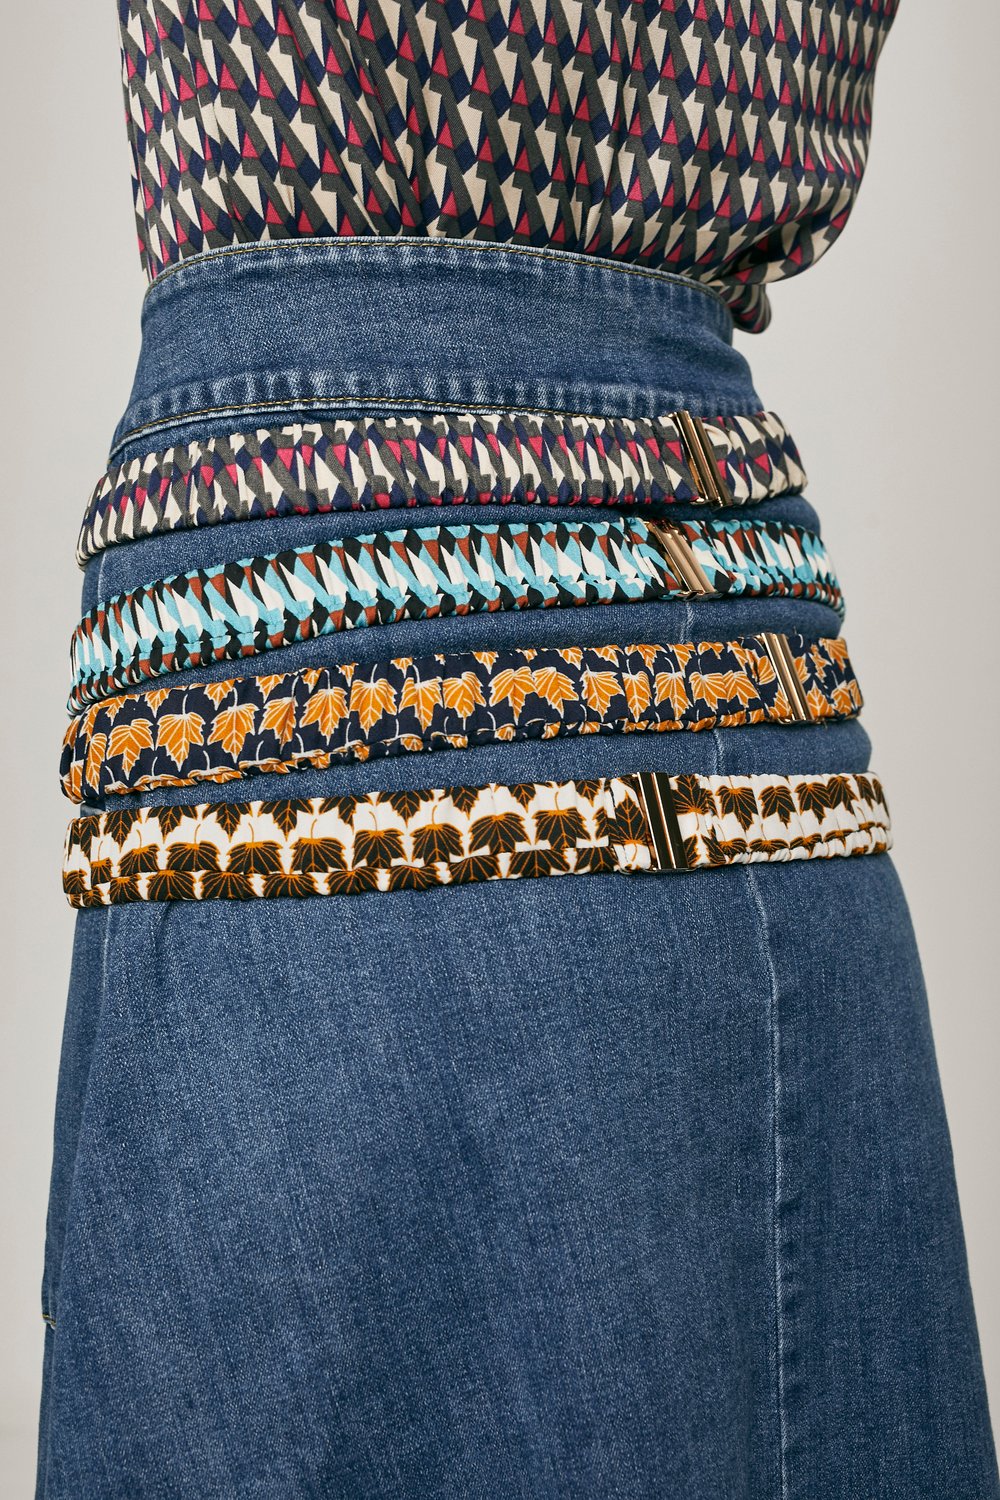 Image of Cinturones elásticos de tela